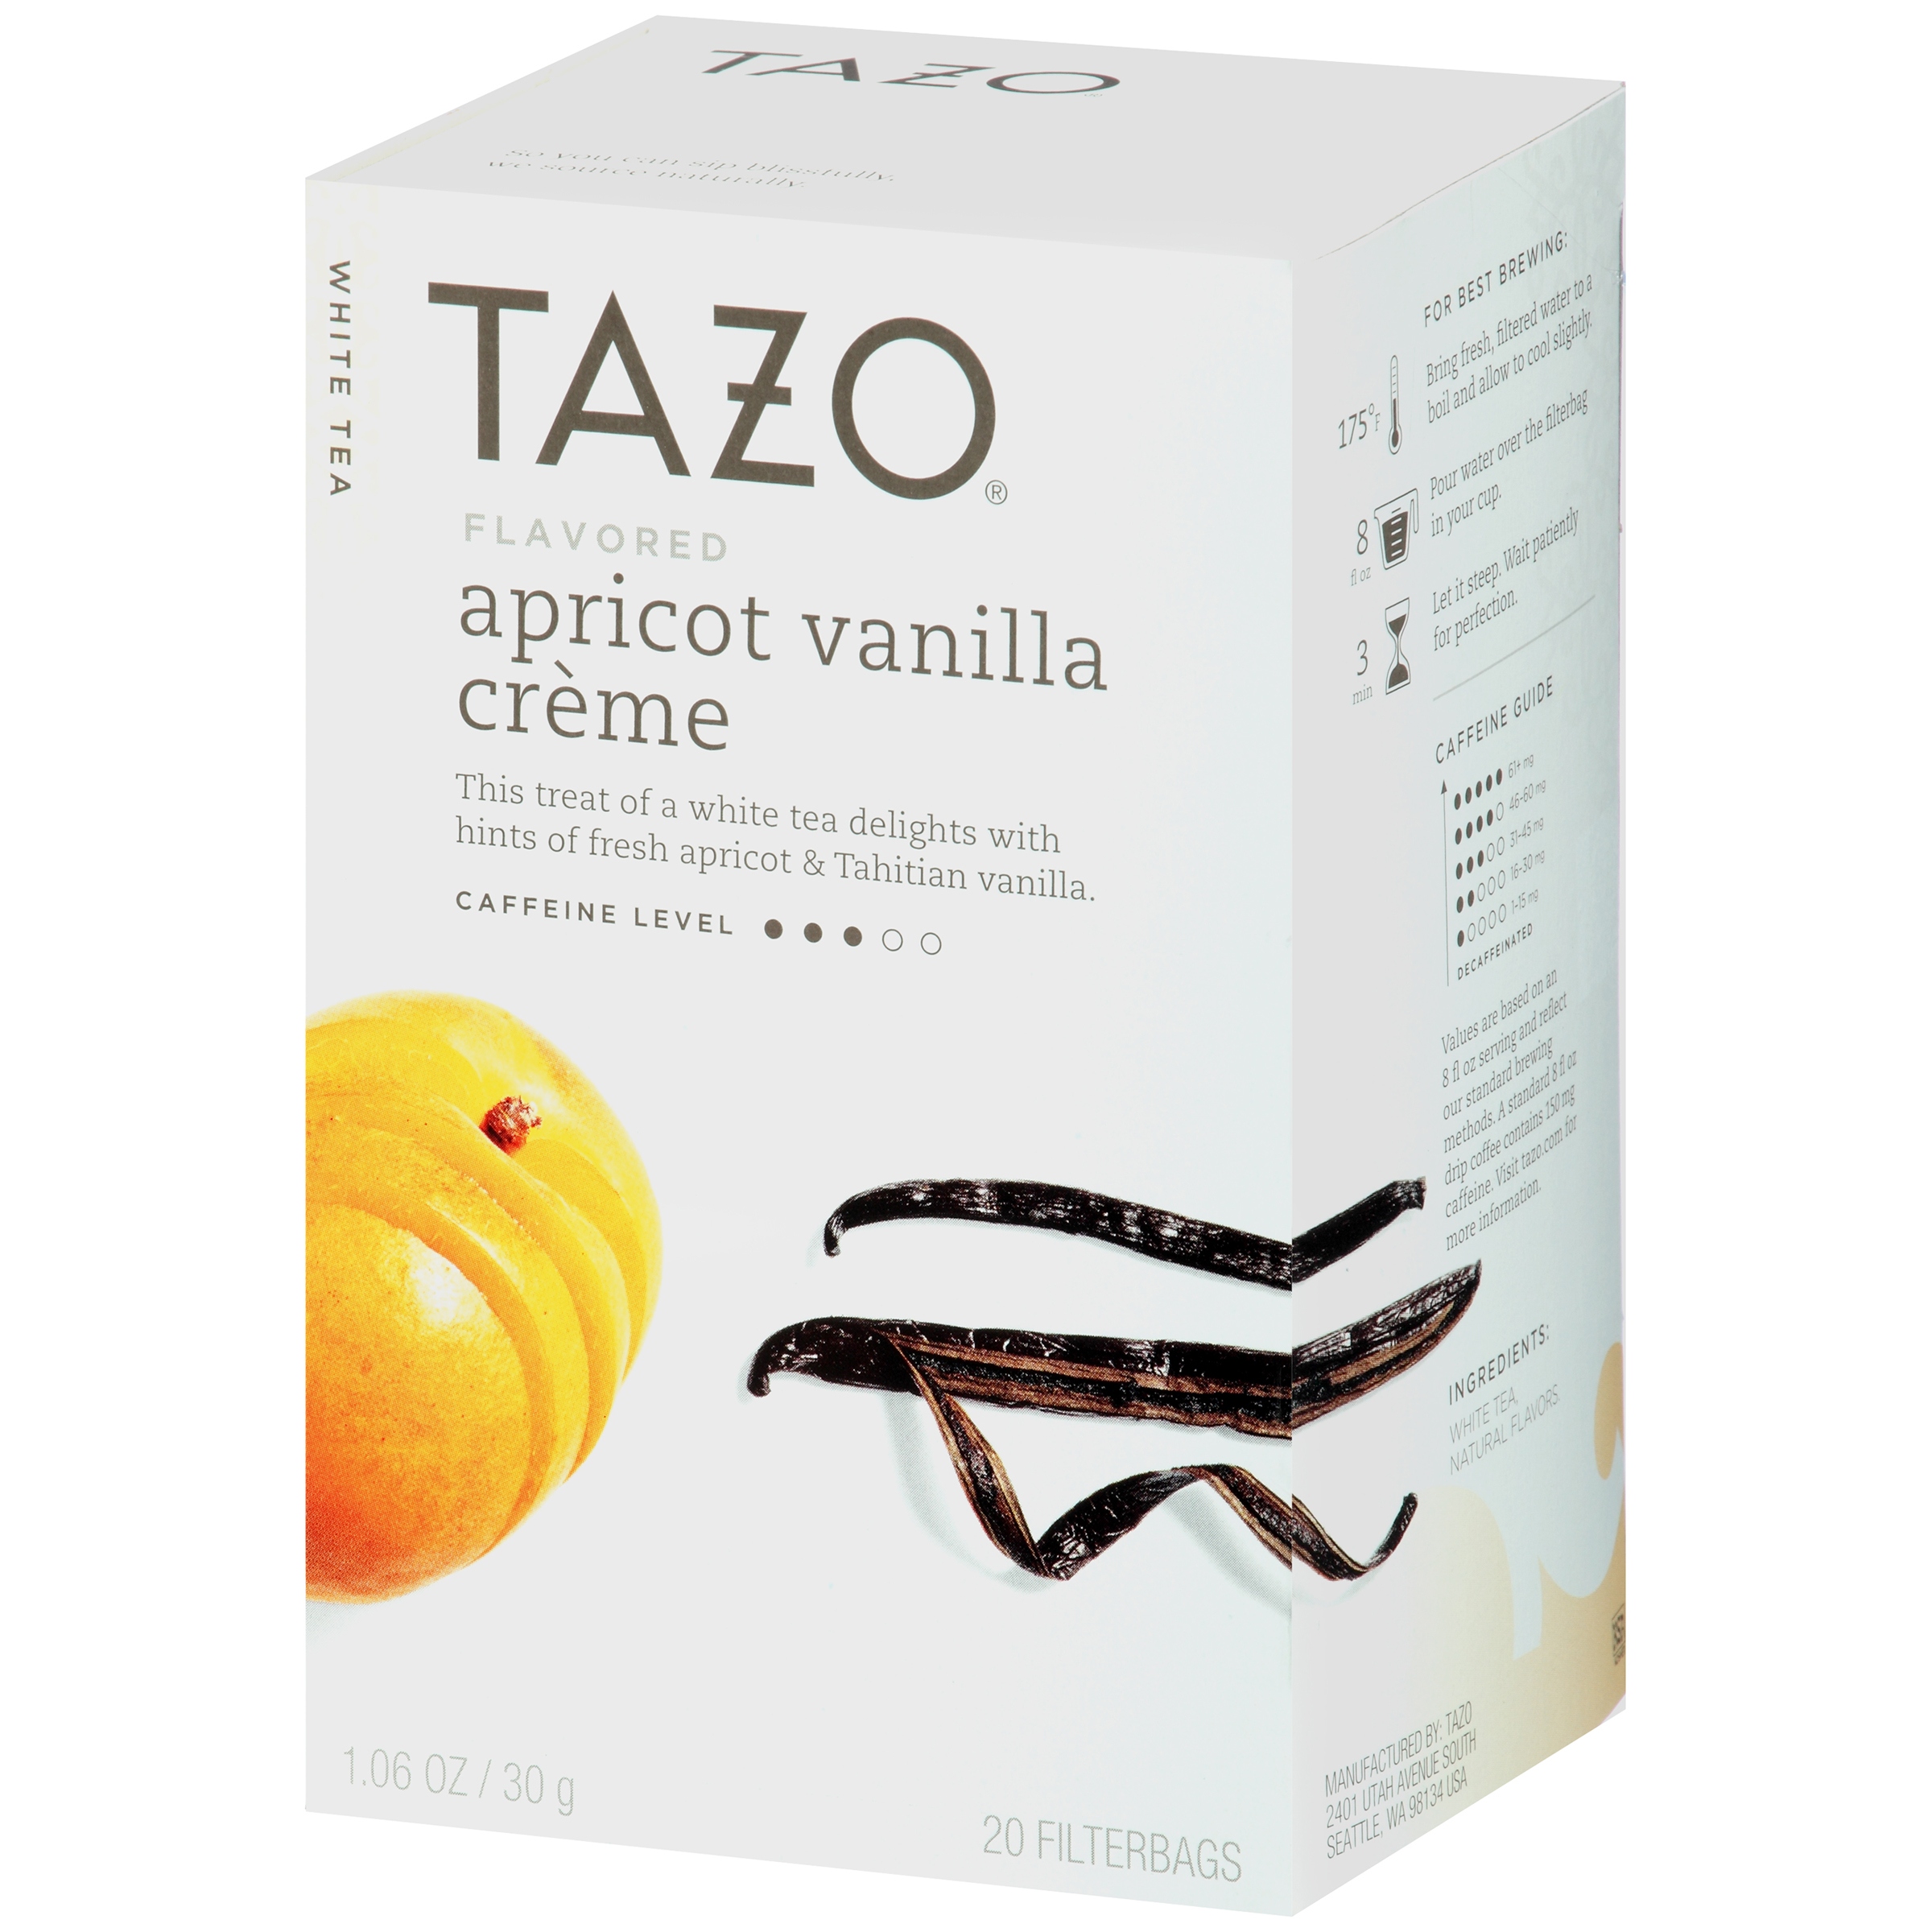 Tazo Apricot Vanilla Crème Flavored White Tea, 20 Count - image 2 of 3